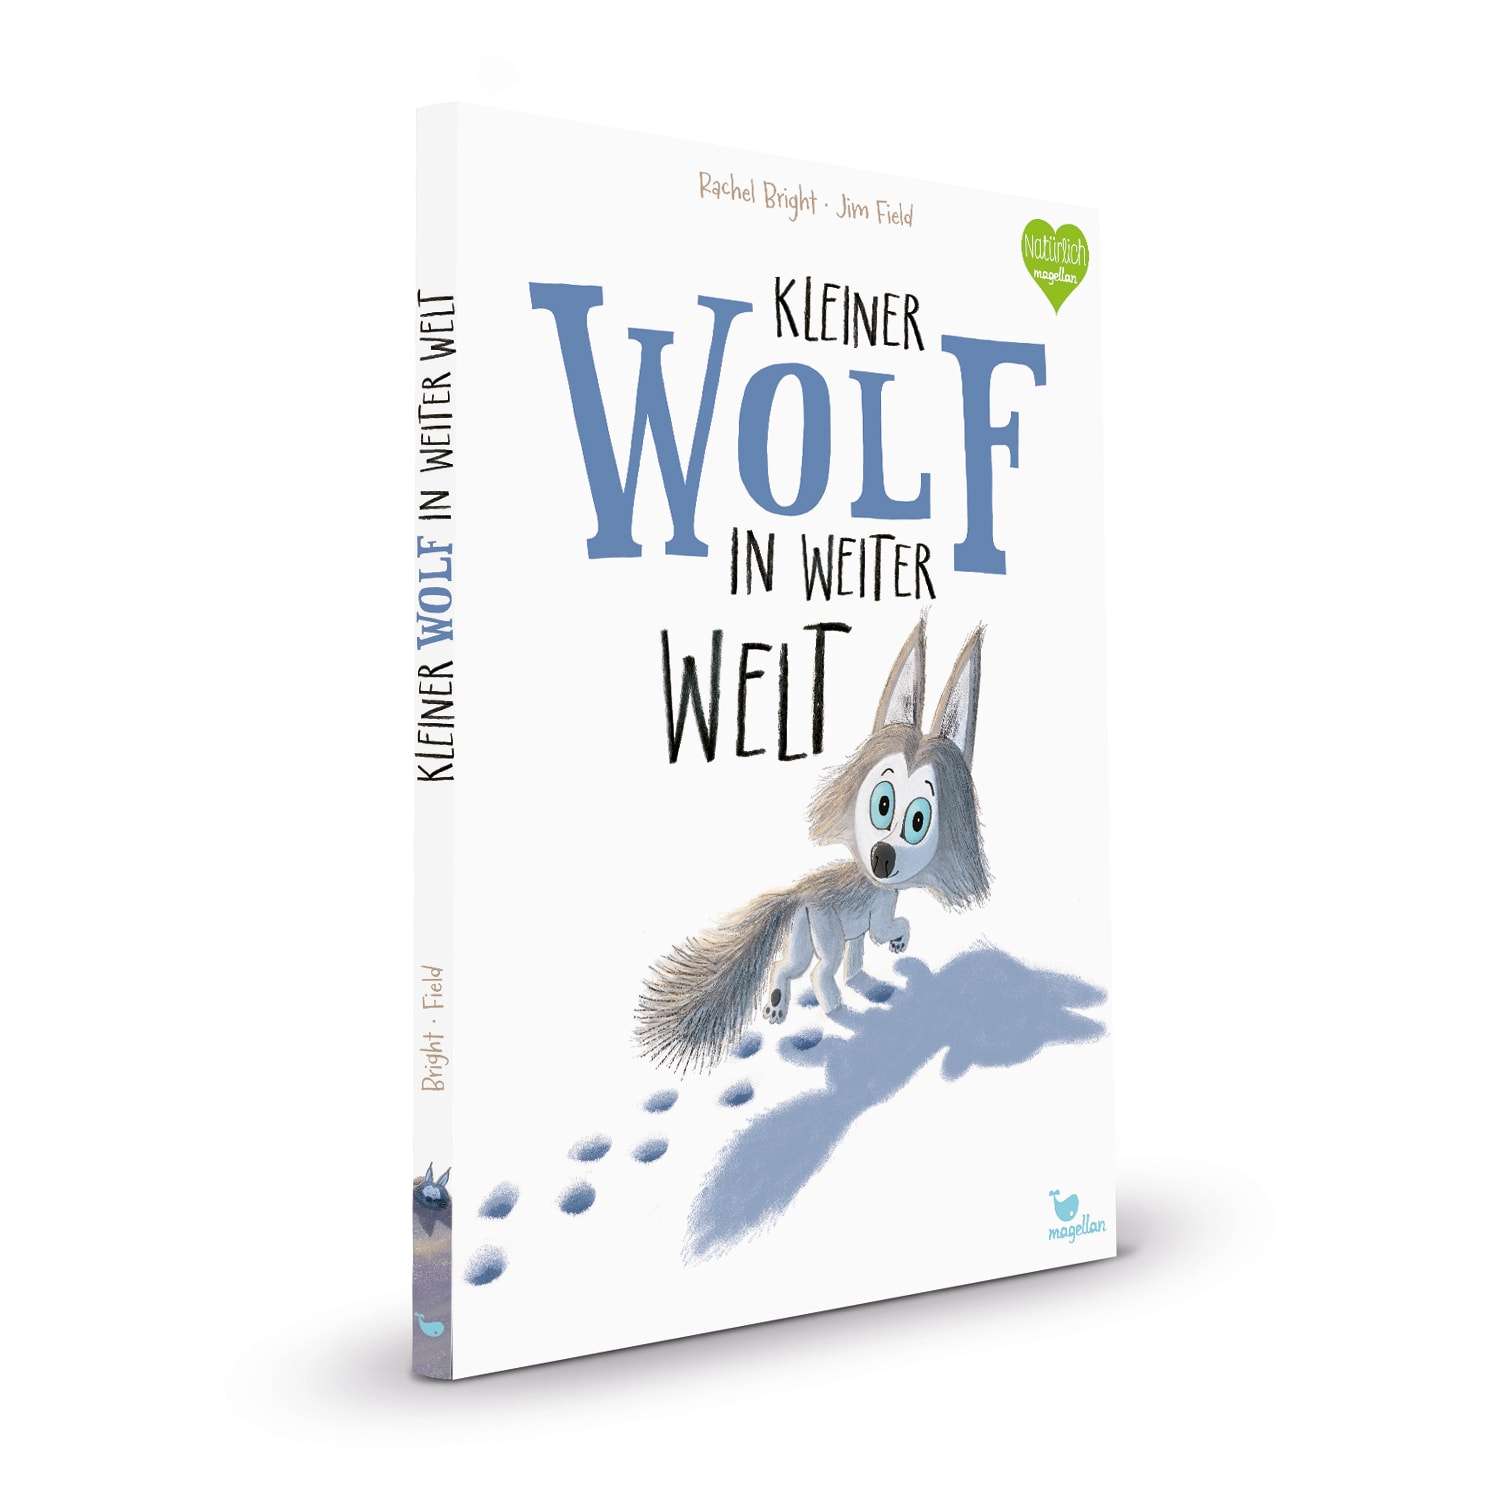 Magellan Pappbilderbuch Rachel Bright, Jim Field - Kleiner Wolf in weiter Welt (1)